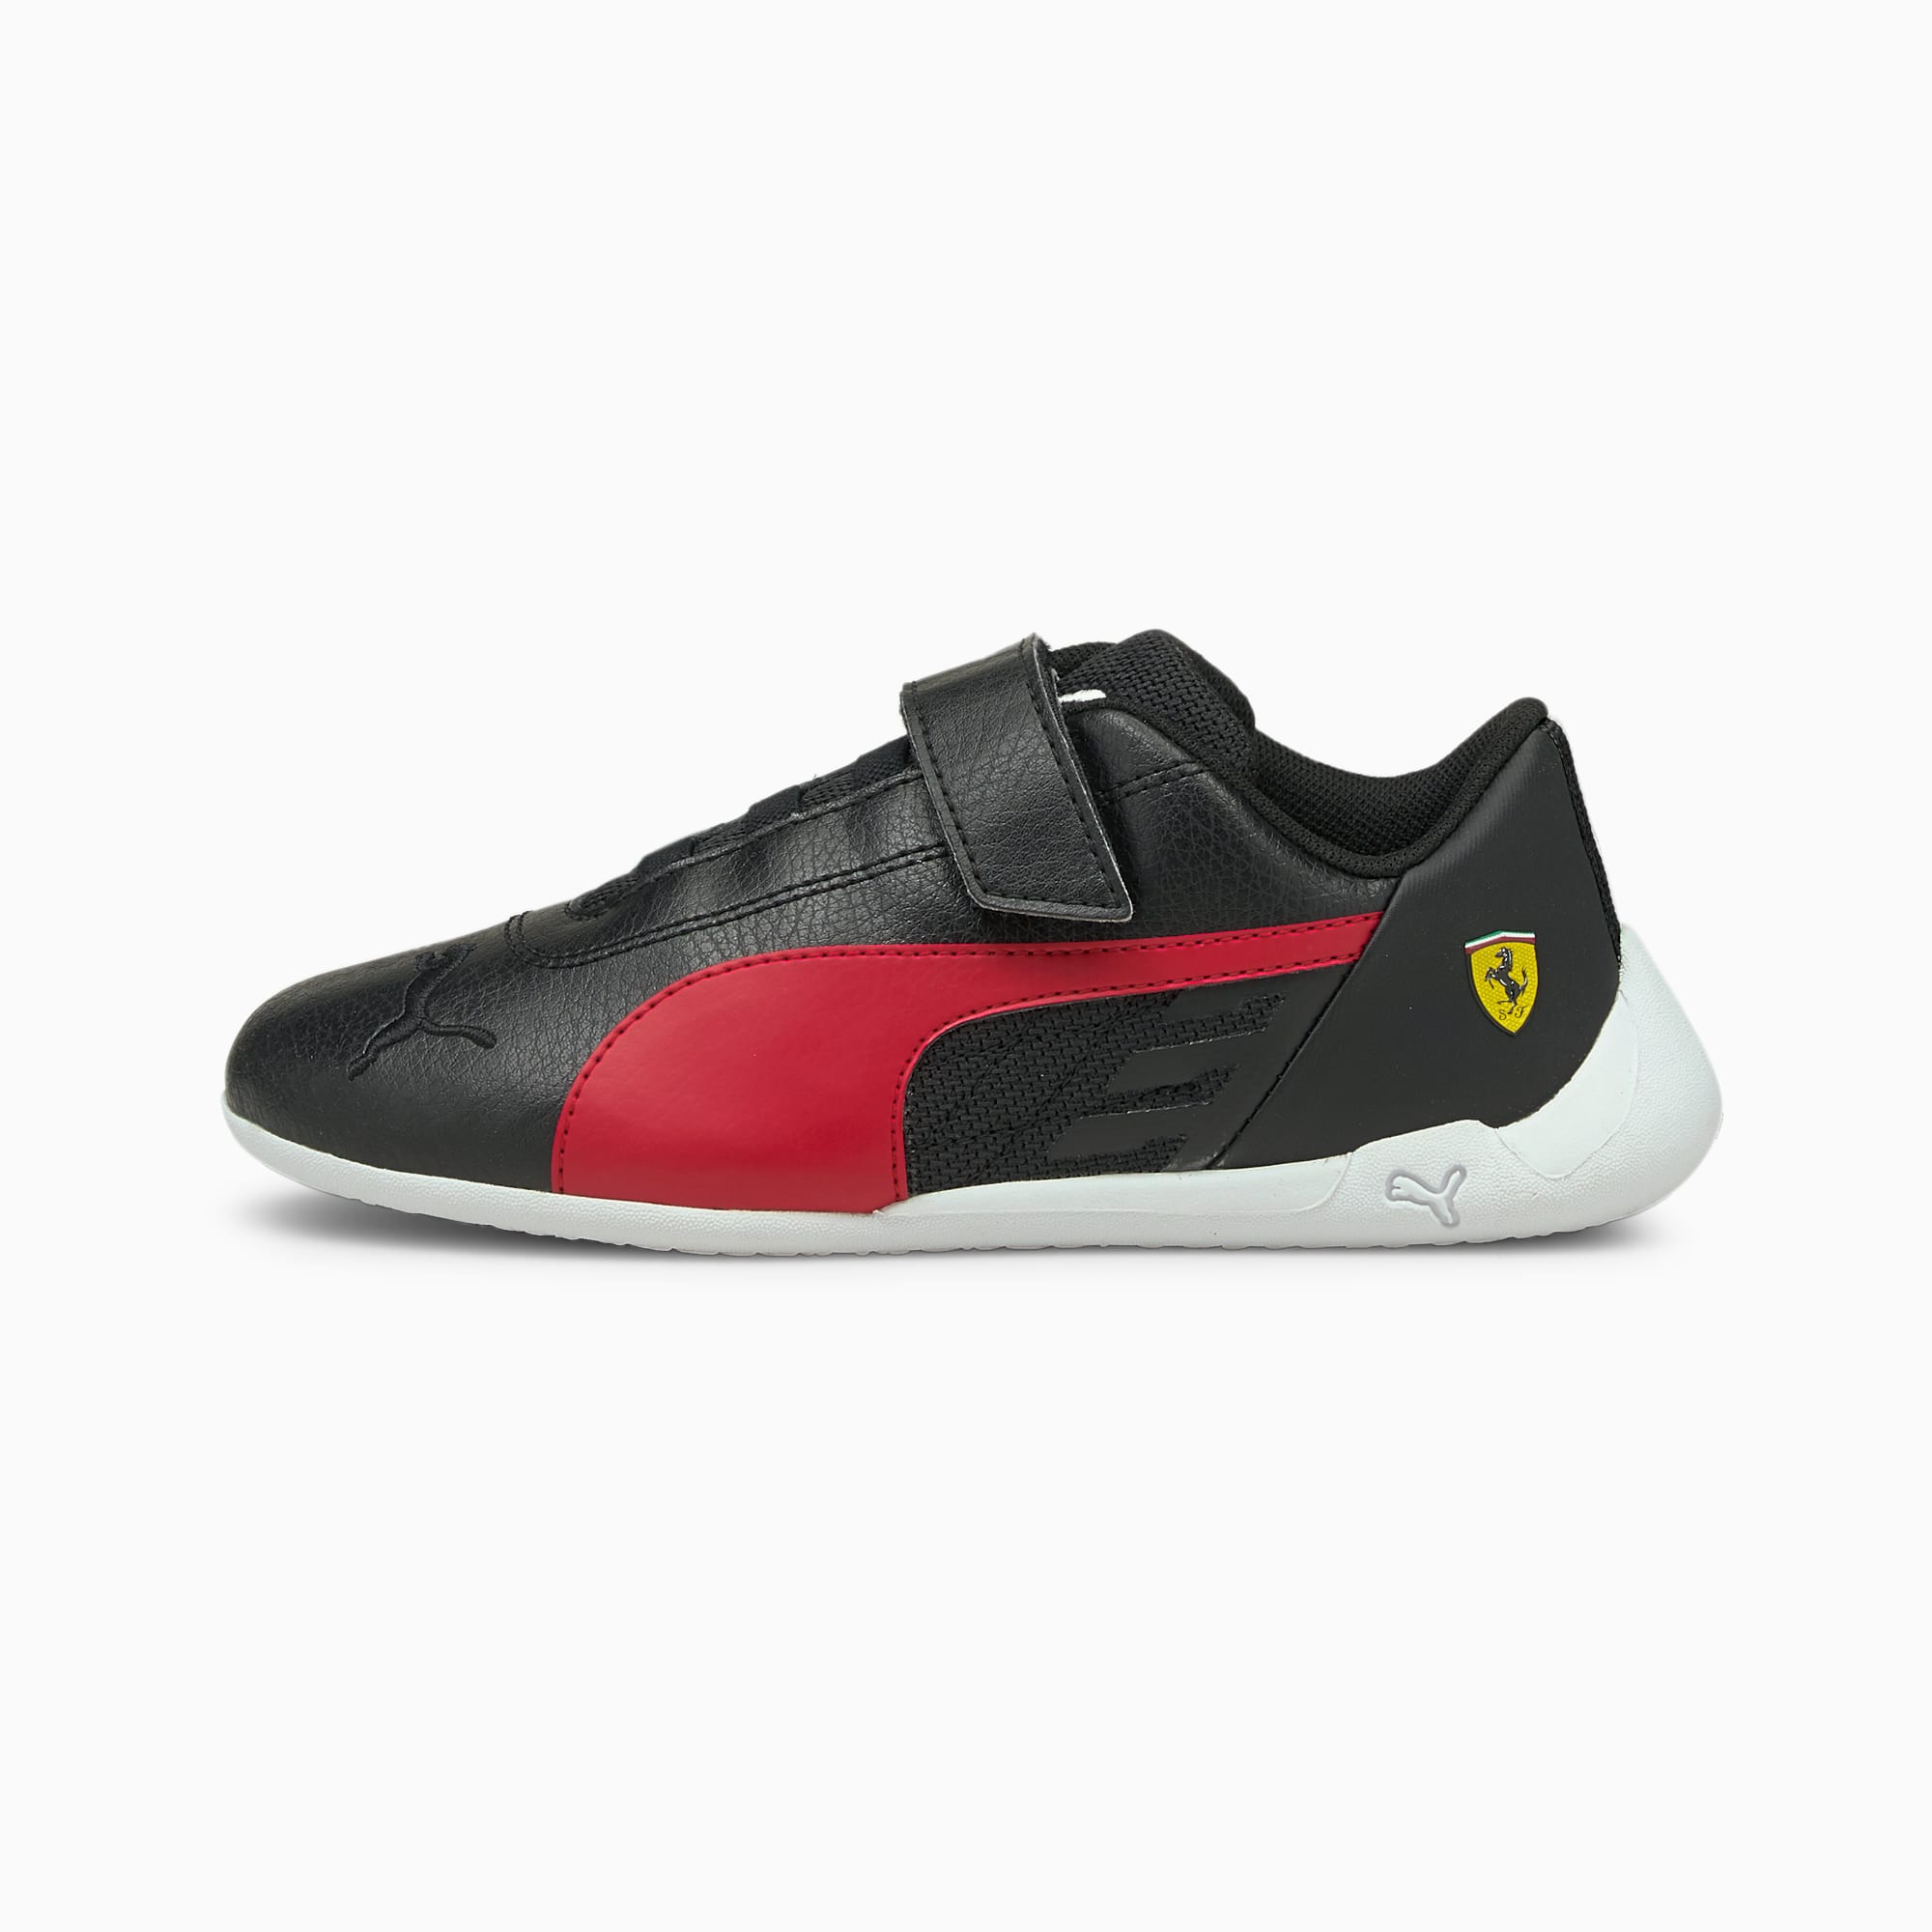 PUMA Chaussure de sport automobile Scuderia Ferrari Race R-Cat Kids pour Enfant, Noir/Rouge/Blanc, T